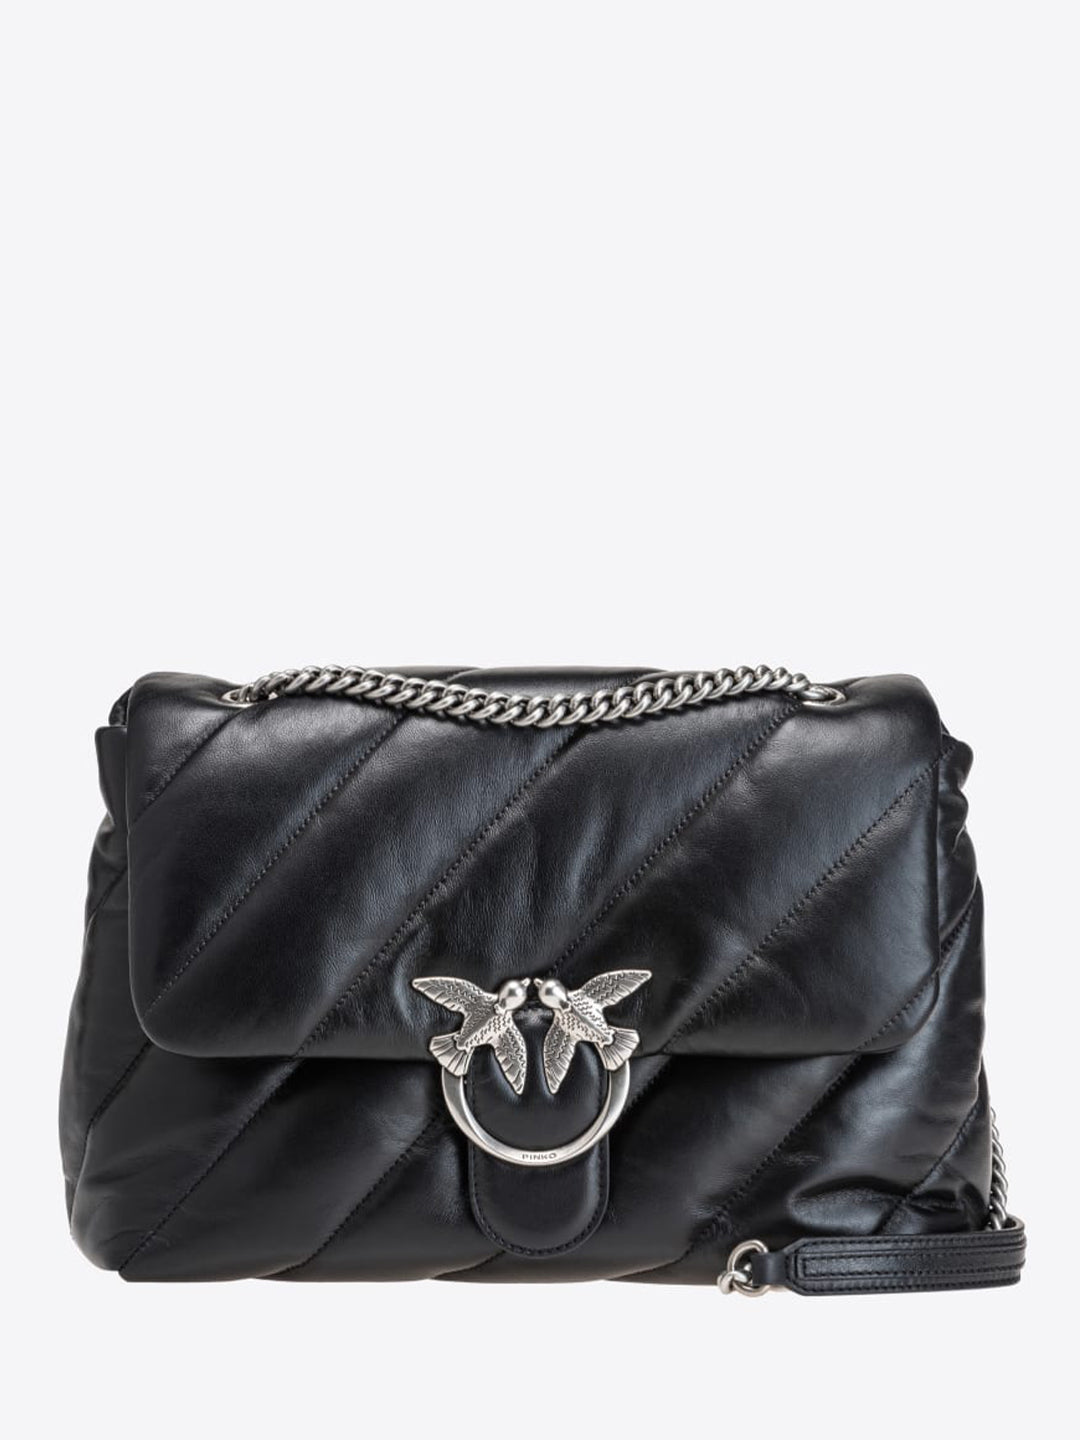 Pinko Love Puff Big CL borsa nero con logo in argento